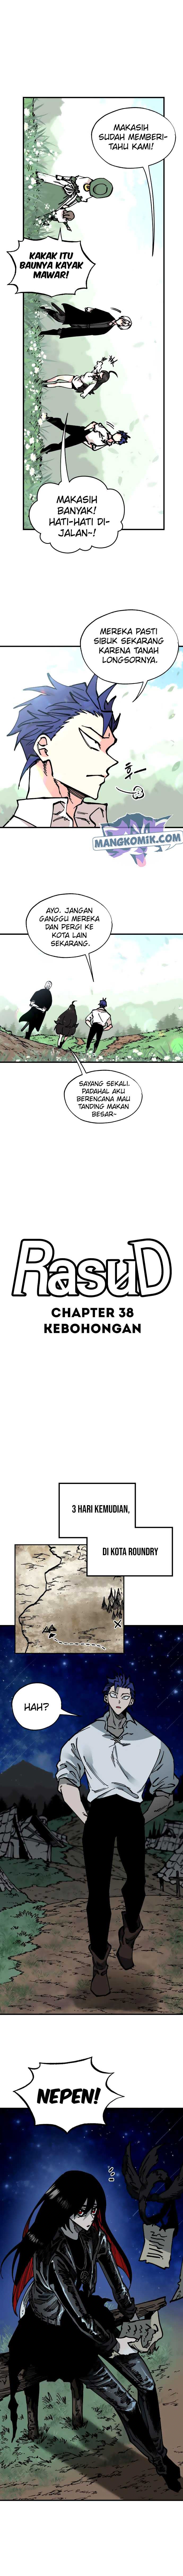 Rathard Chapter 38